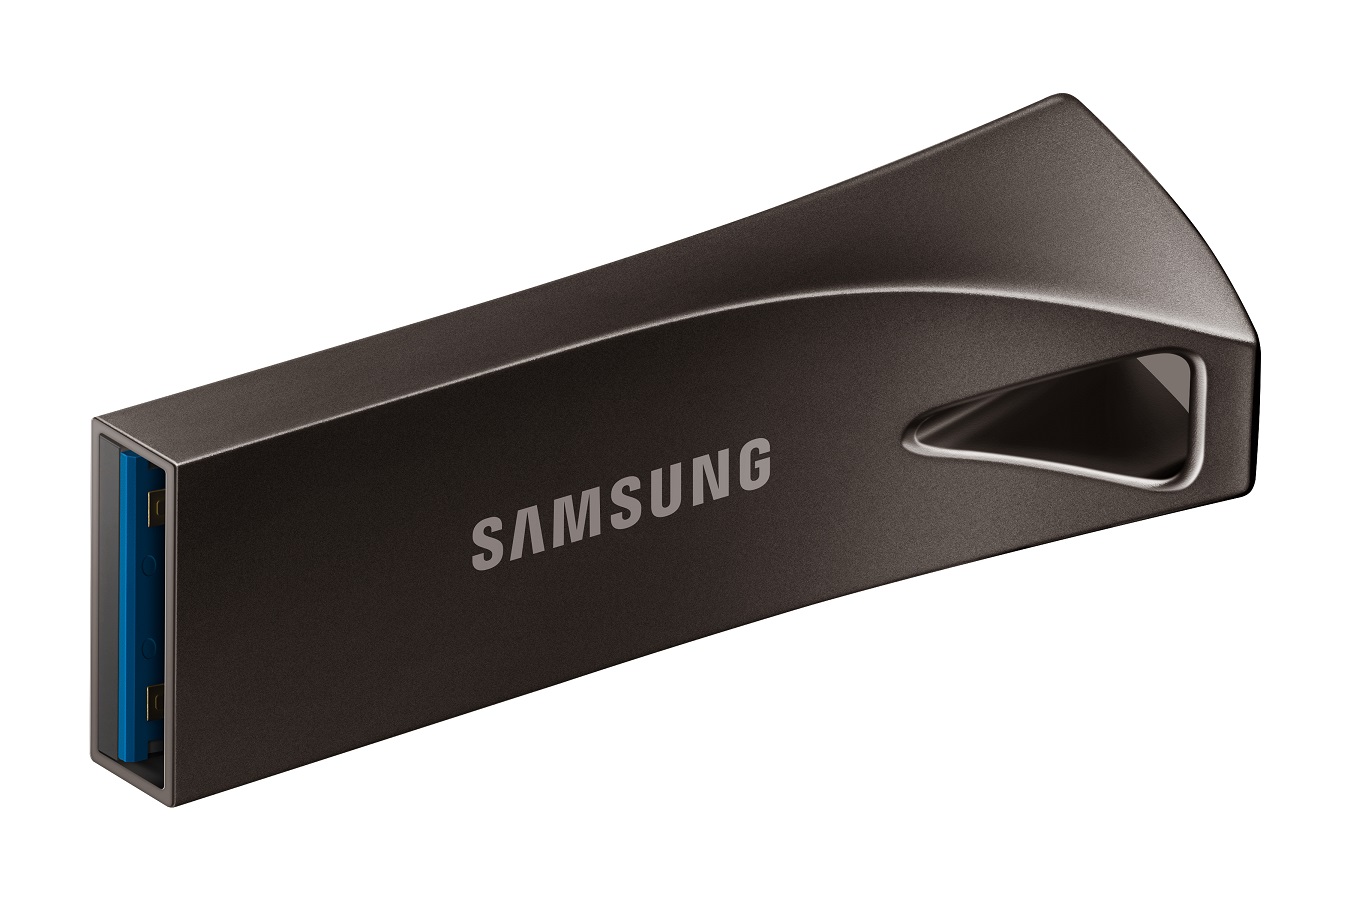 USB klíč Samsung BAR Plus, 512 GB, USB 3.2 Gen 1, šedý